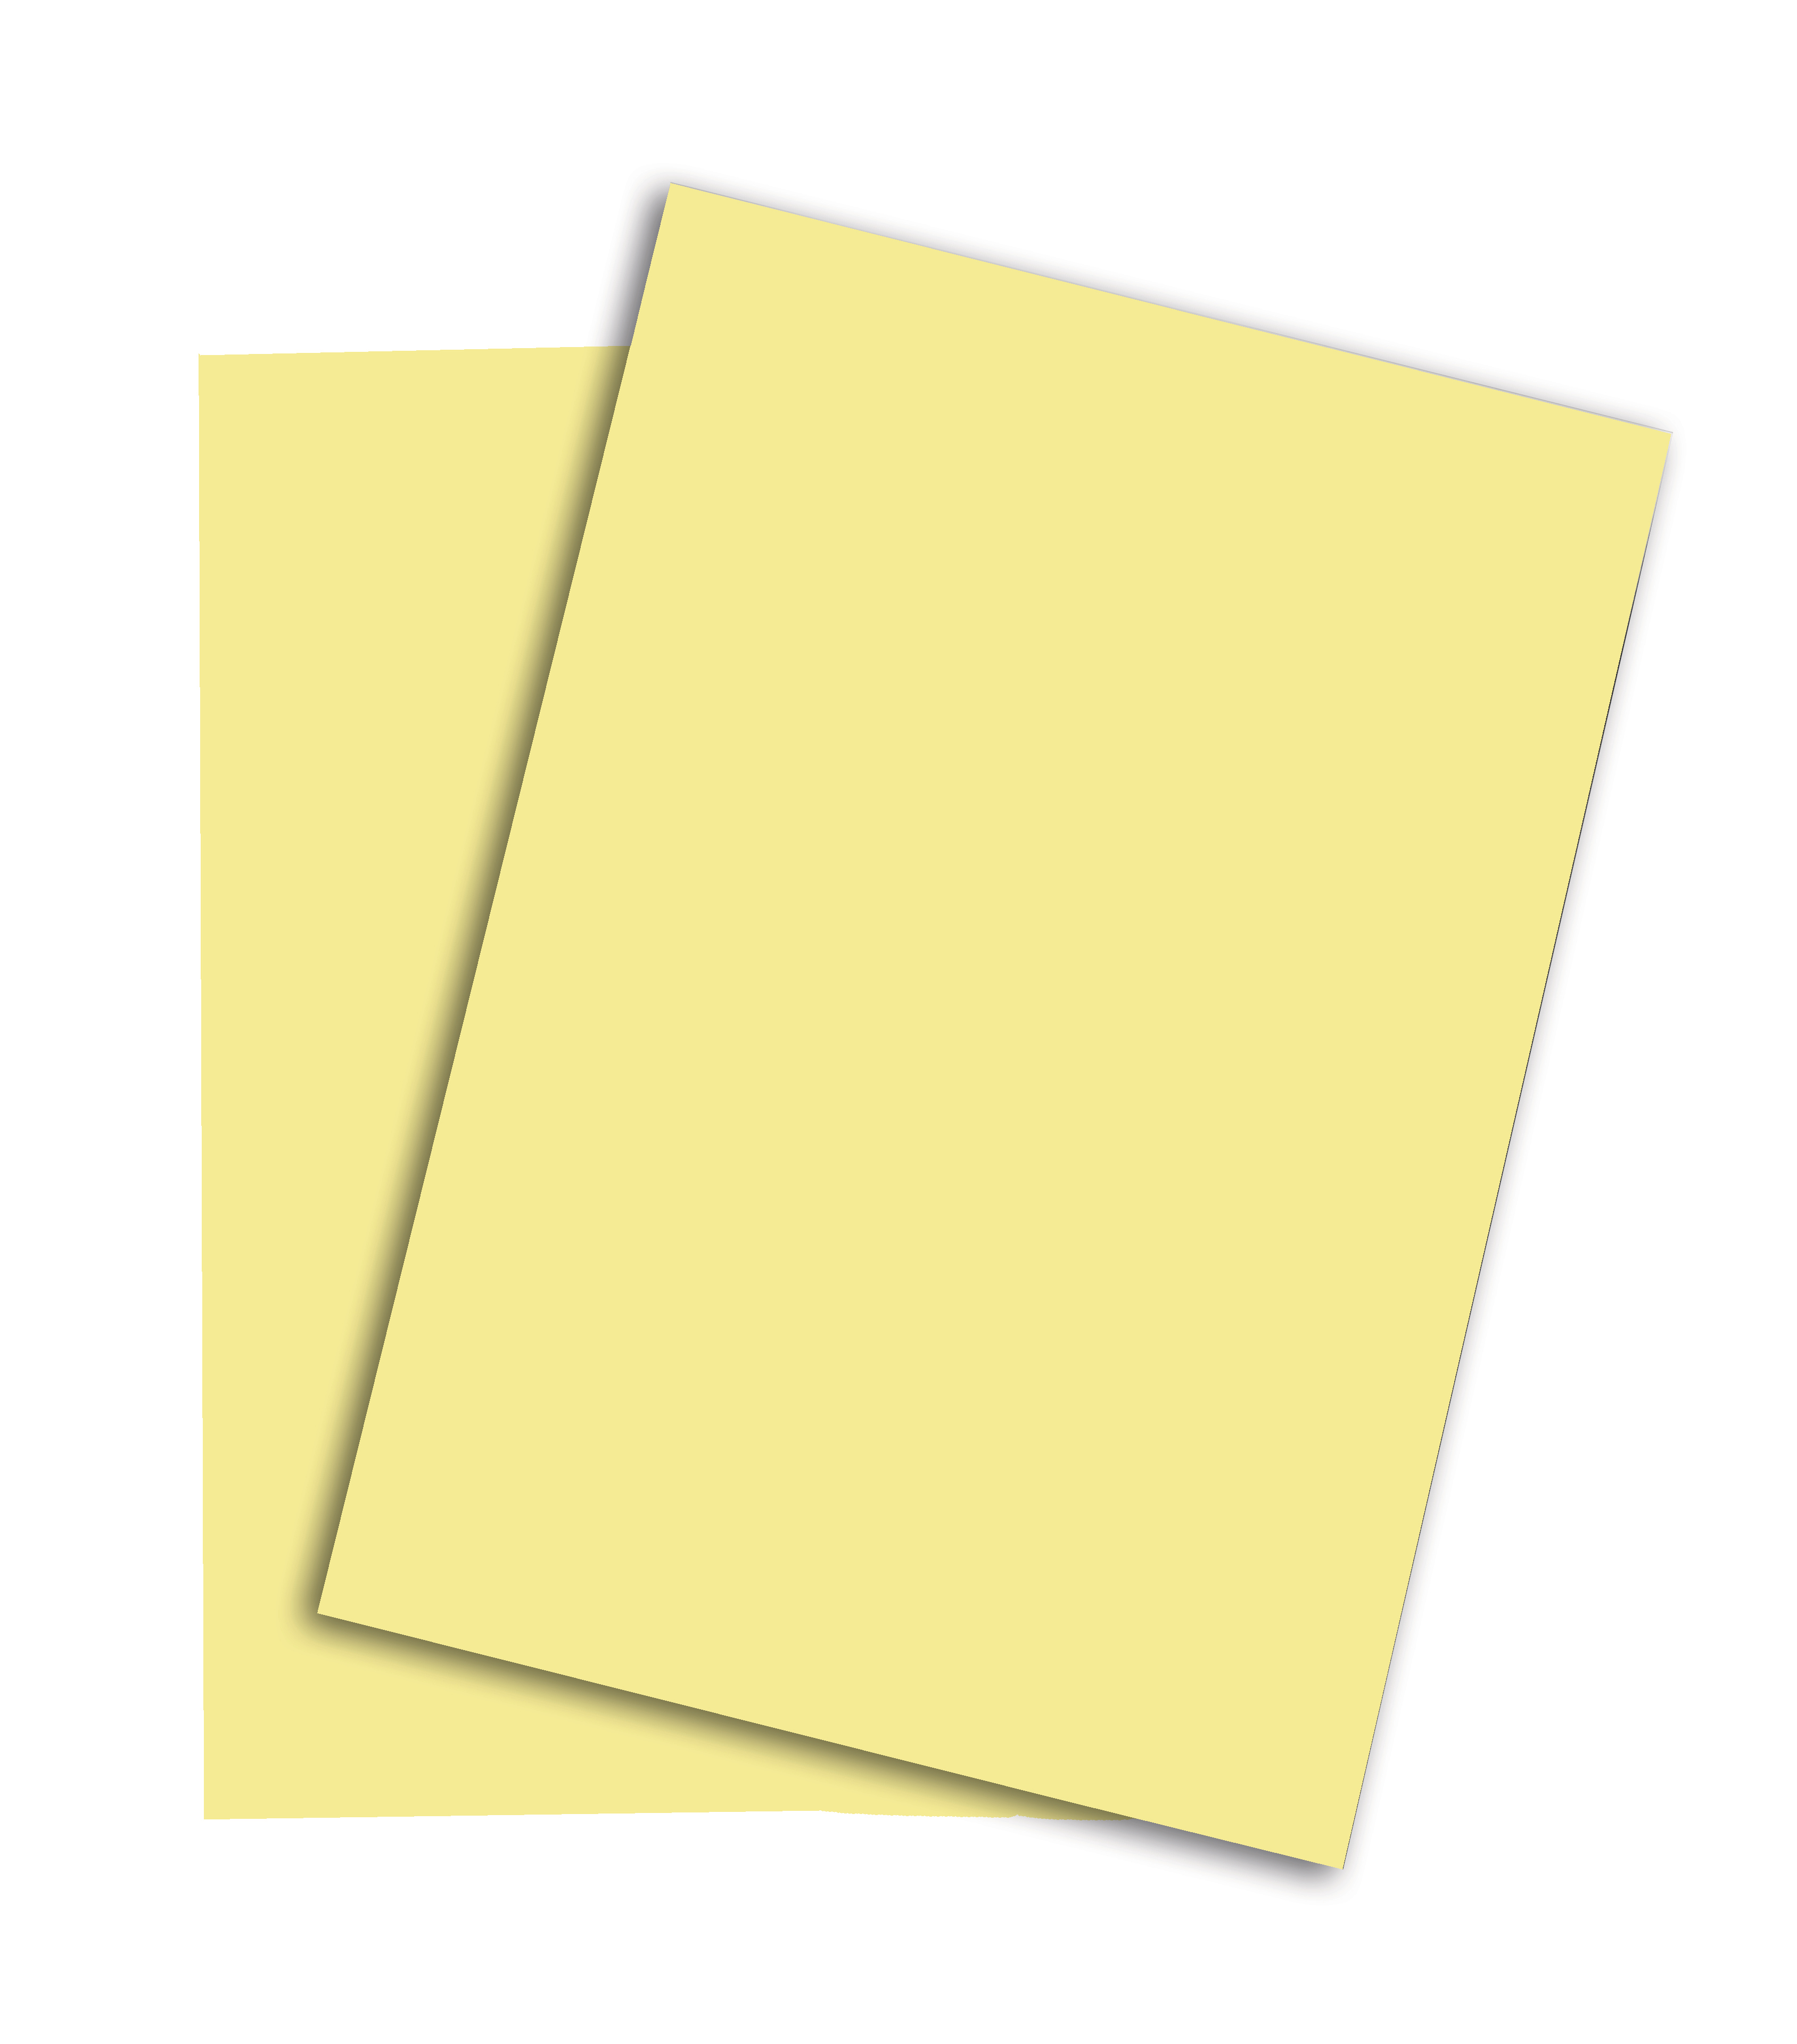 PAPYRUS Rainbow Papier FSC A4 88042298 80g, jaune pâle 500 feuilles